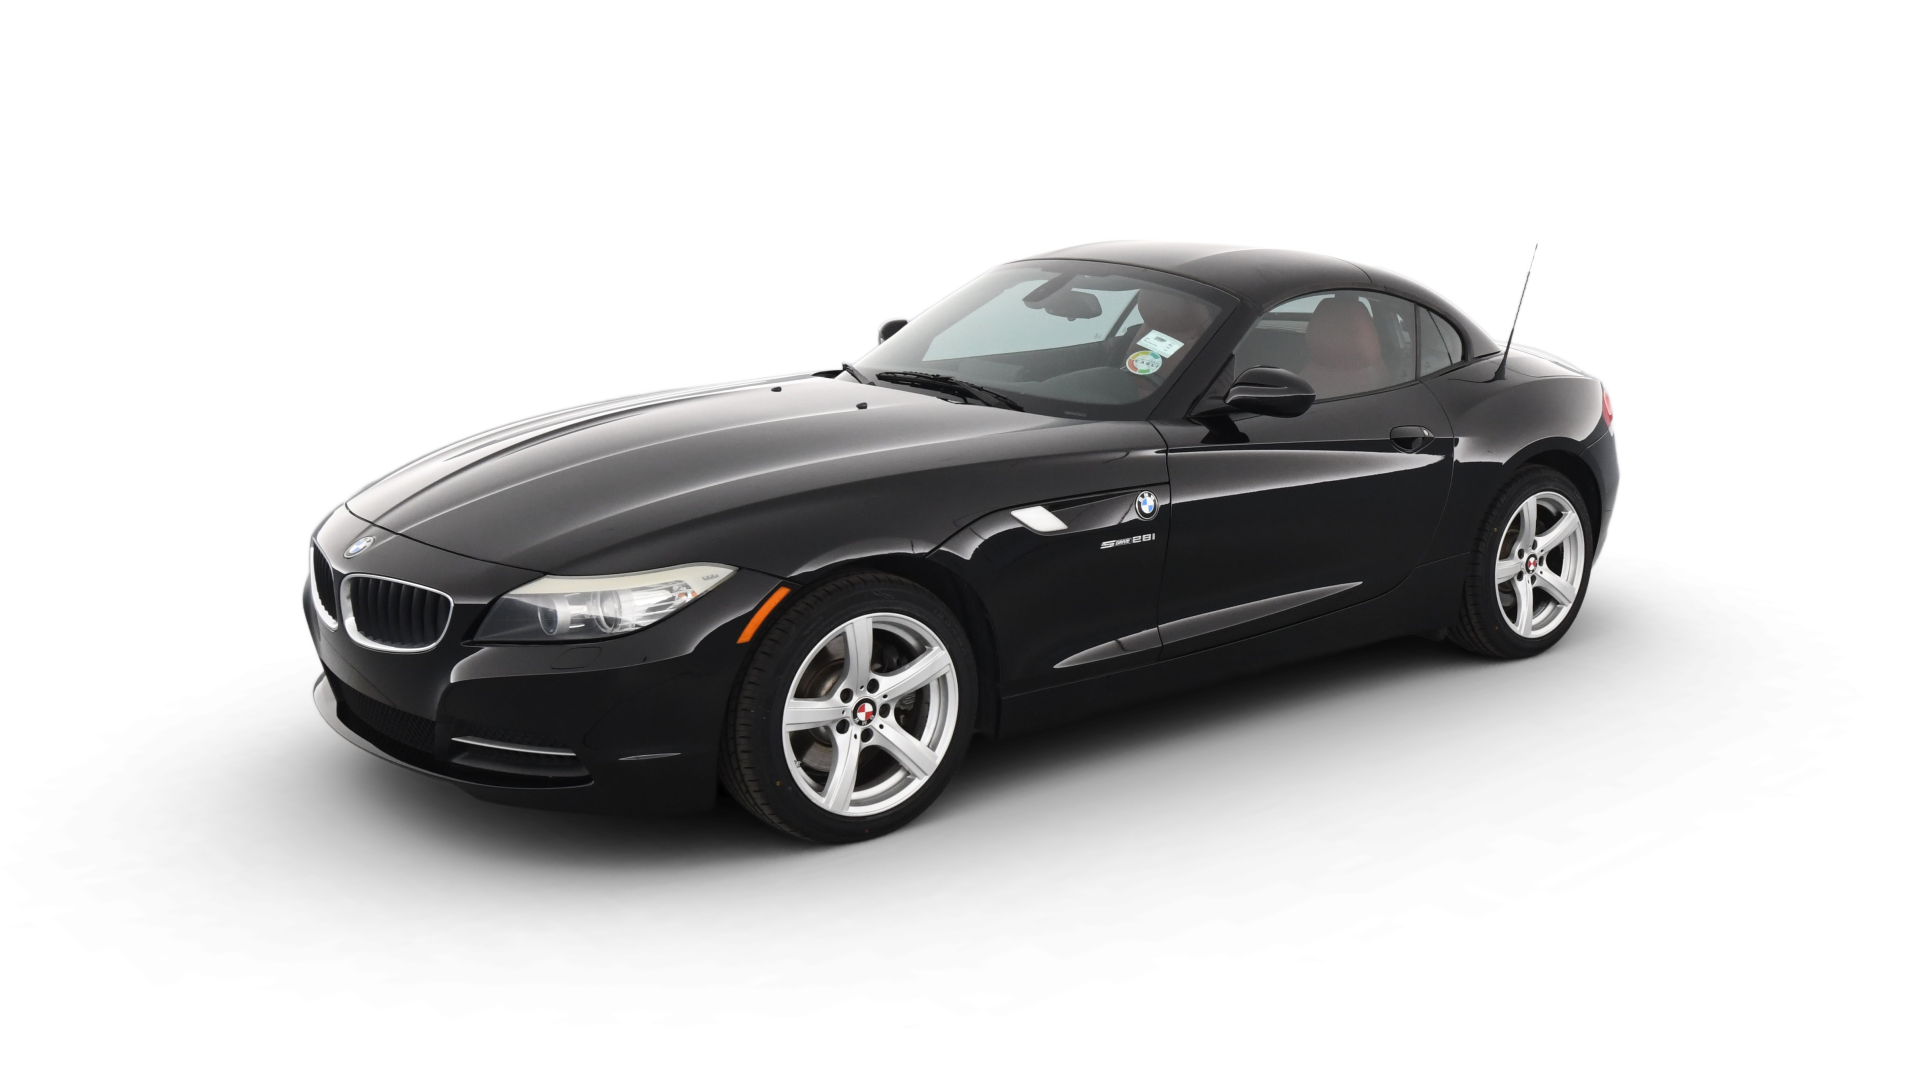 BMW Z4 model image.